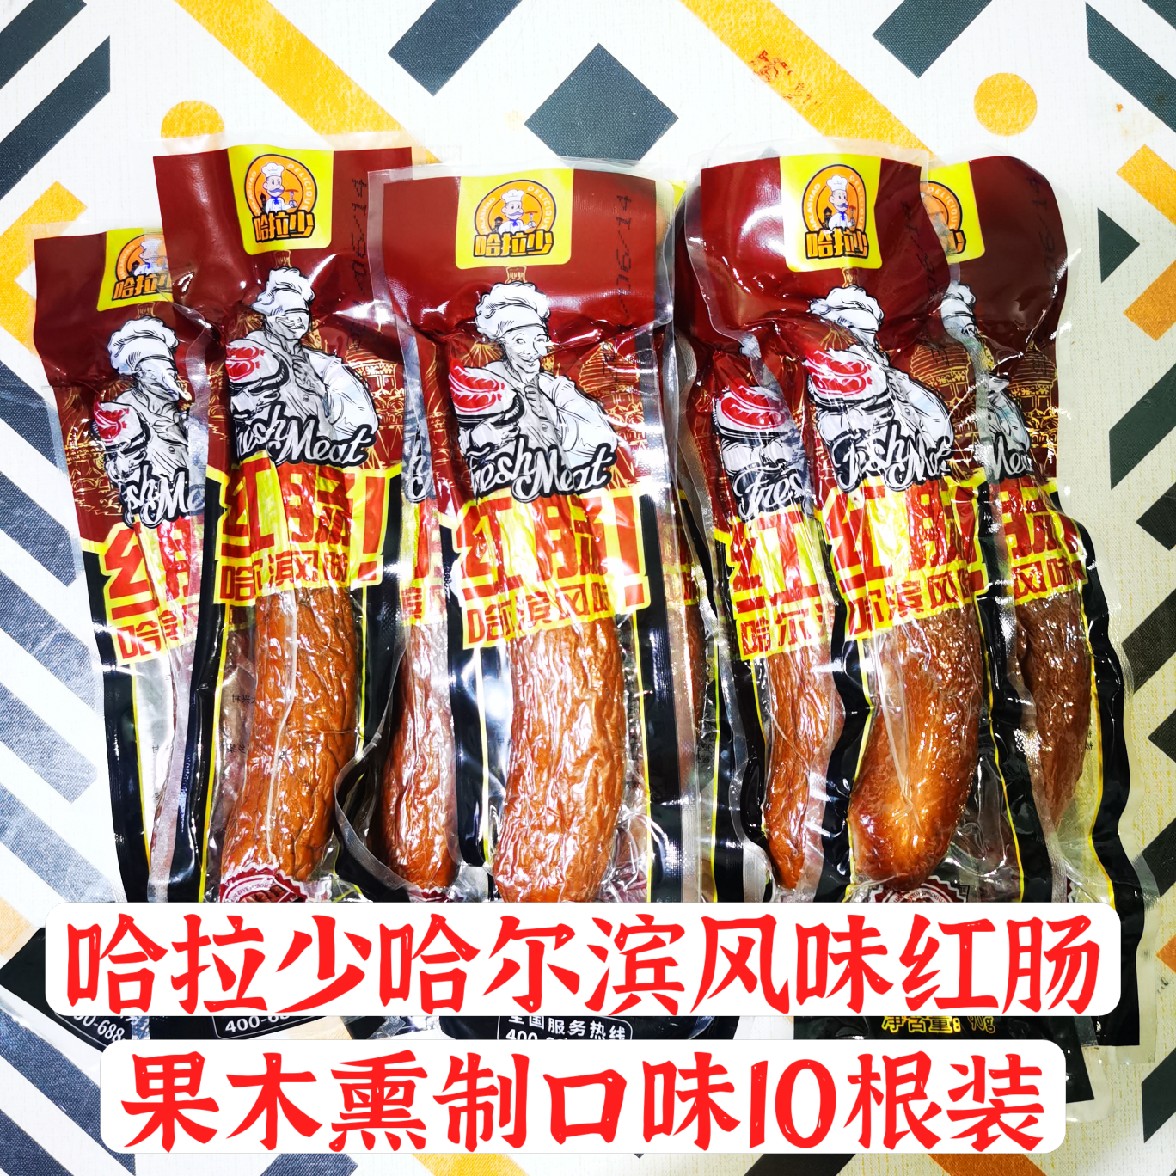 正宗哈拉少哈尔滨风味红肠香肠肉肠熟食独立包装零食10只装正品